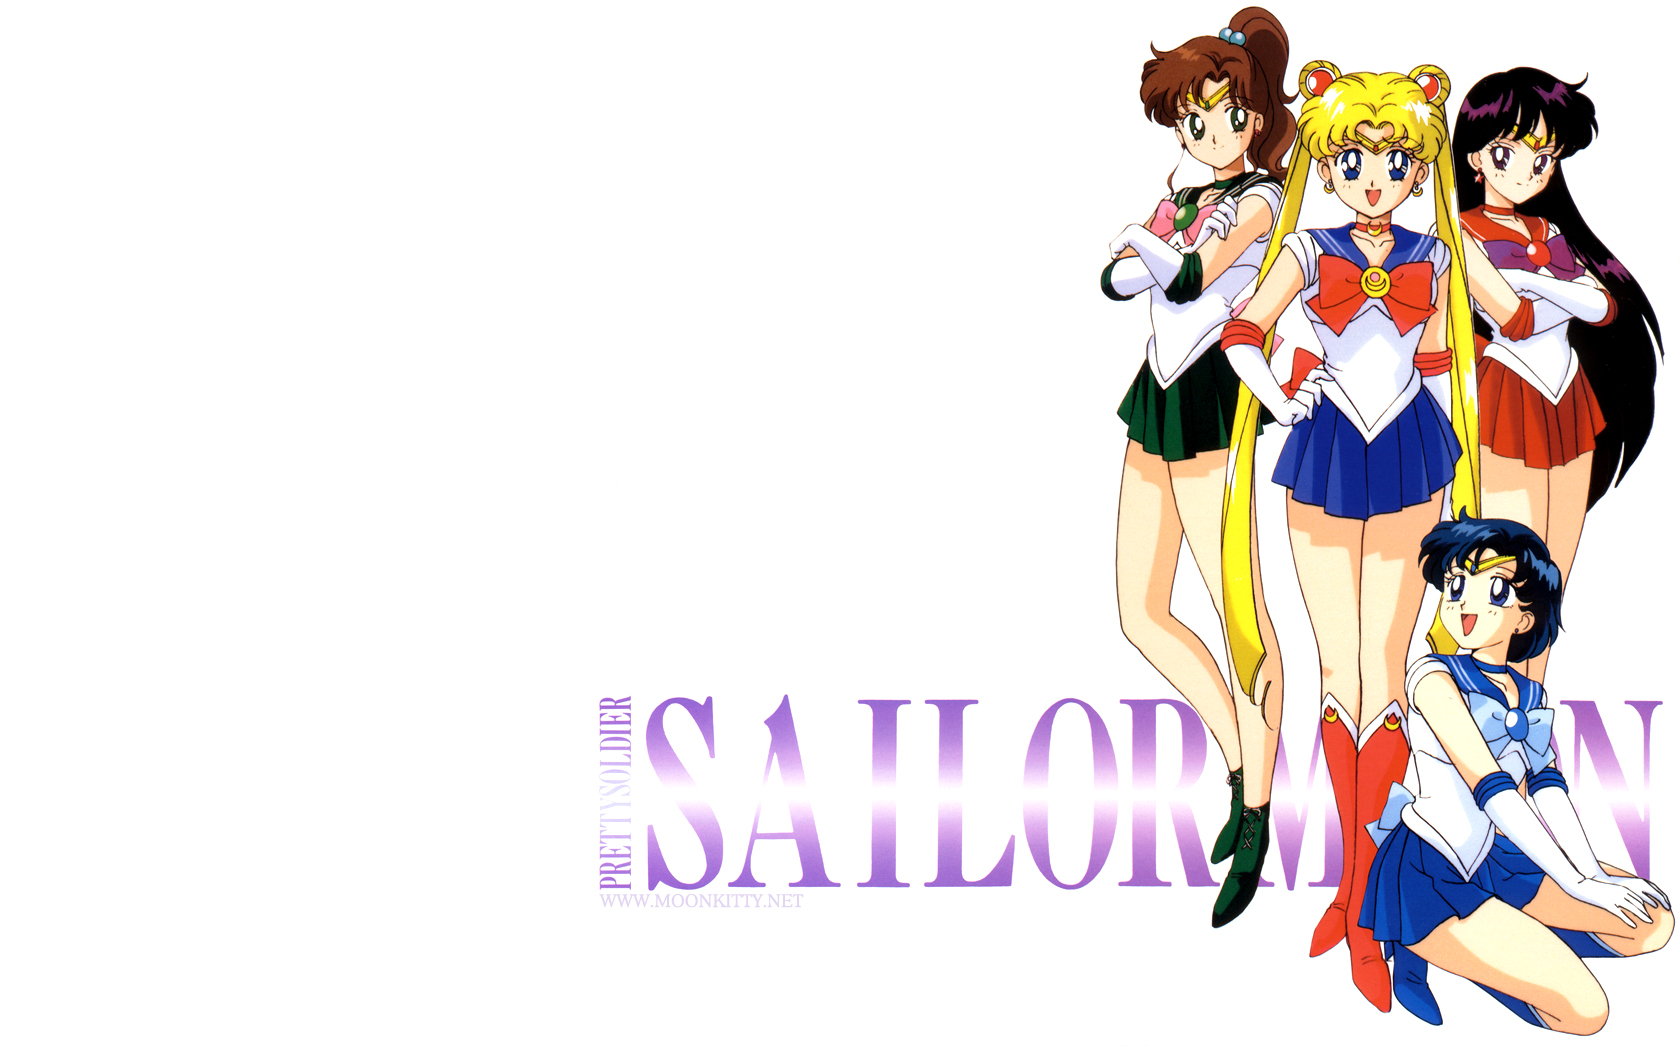 Sailor Jupiter Posing Powerfully Moon And Molly